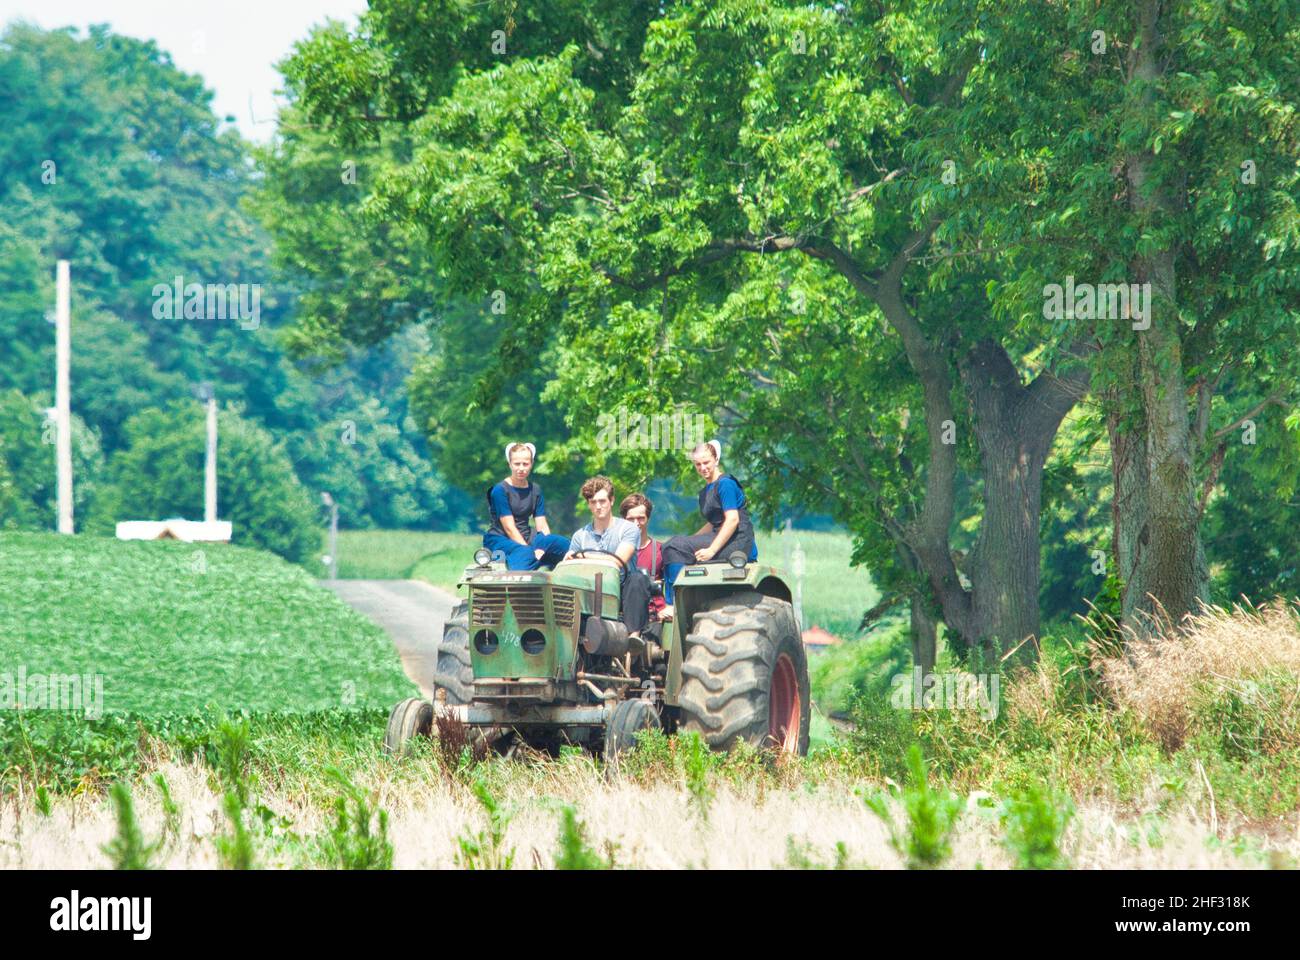 Ronks, Pennsylvania, Juli 2021 - Amish Boy und Girl Teenagers, die an einem Sommertag auf einem alten Traktor auf Ackerland reiten Stockfoto